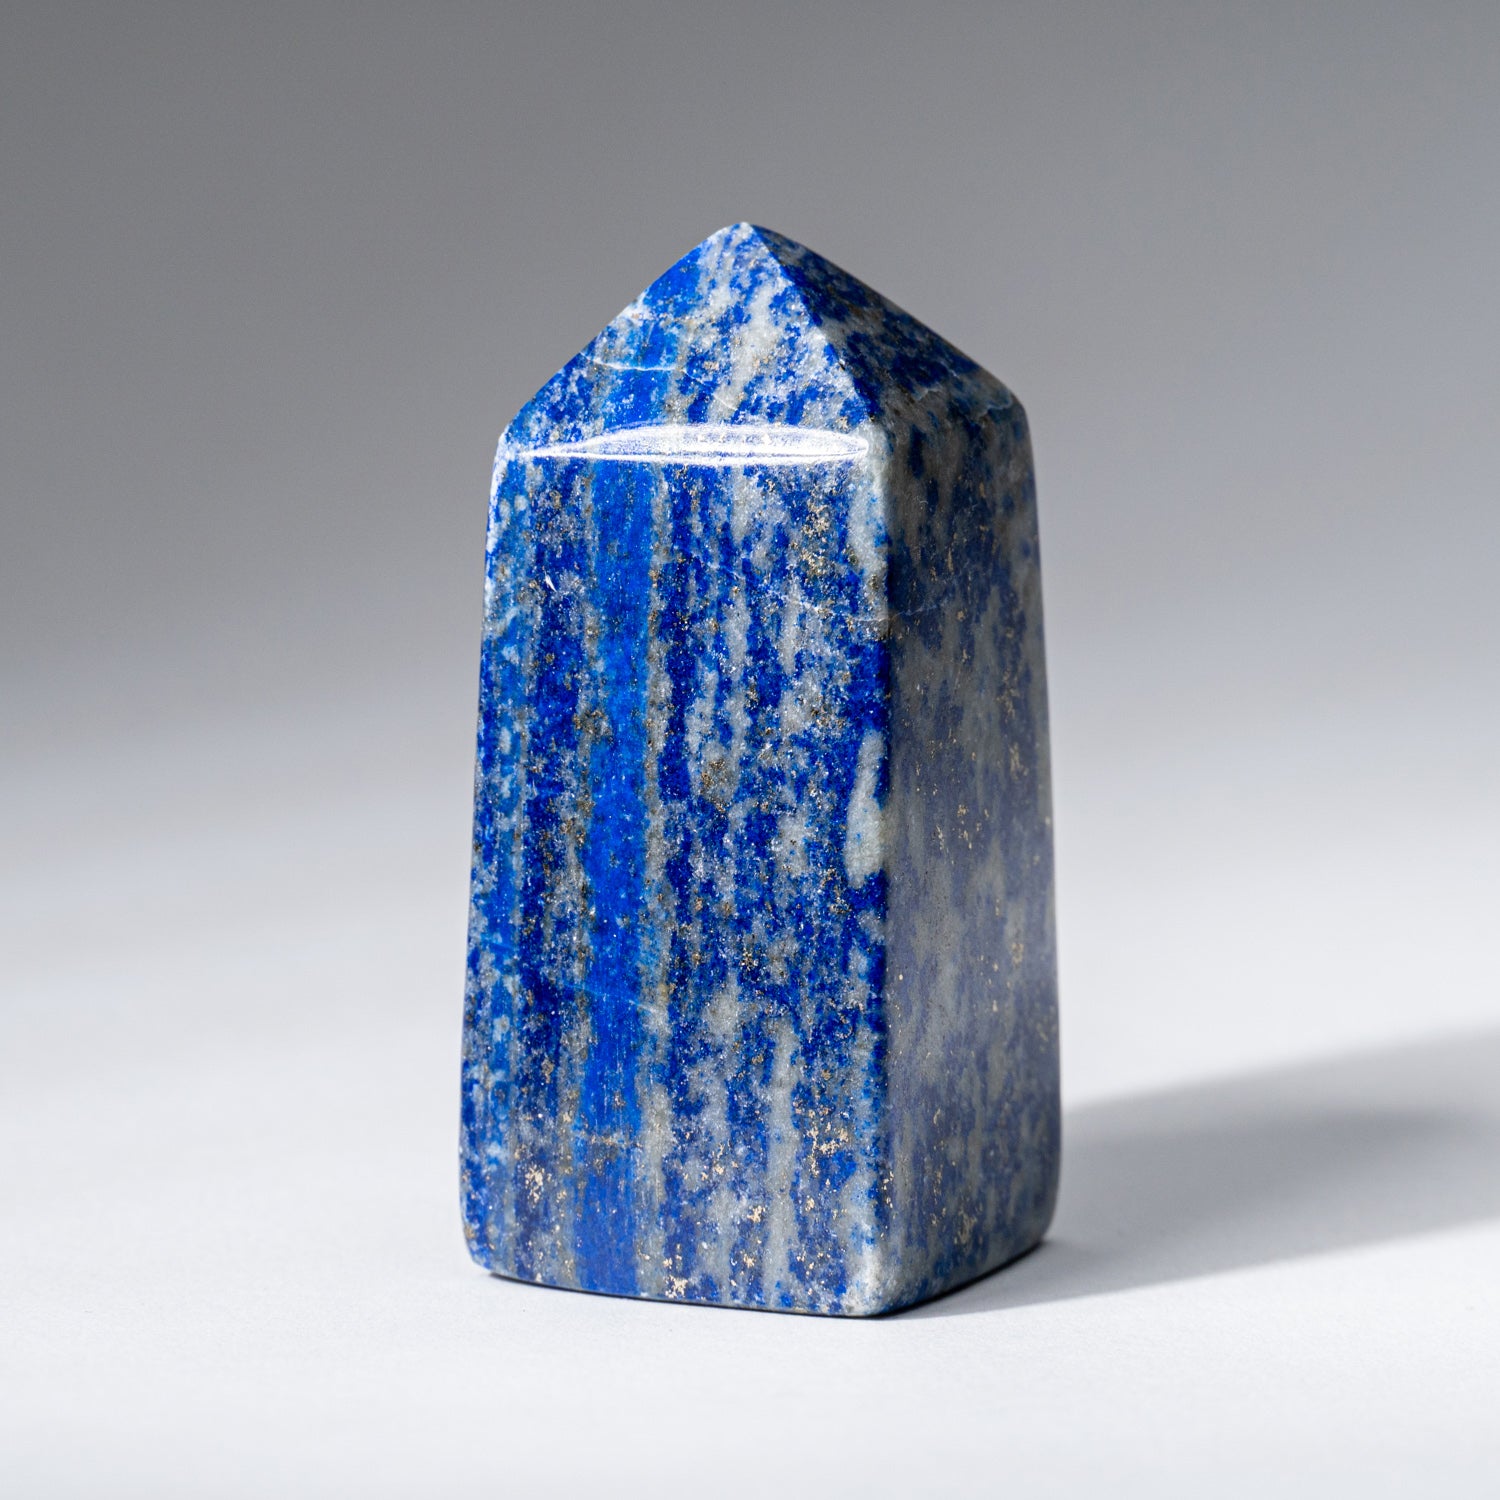 Polished Lapis Lazuli Obelisk from Afghanistan (112.4 grams)